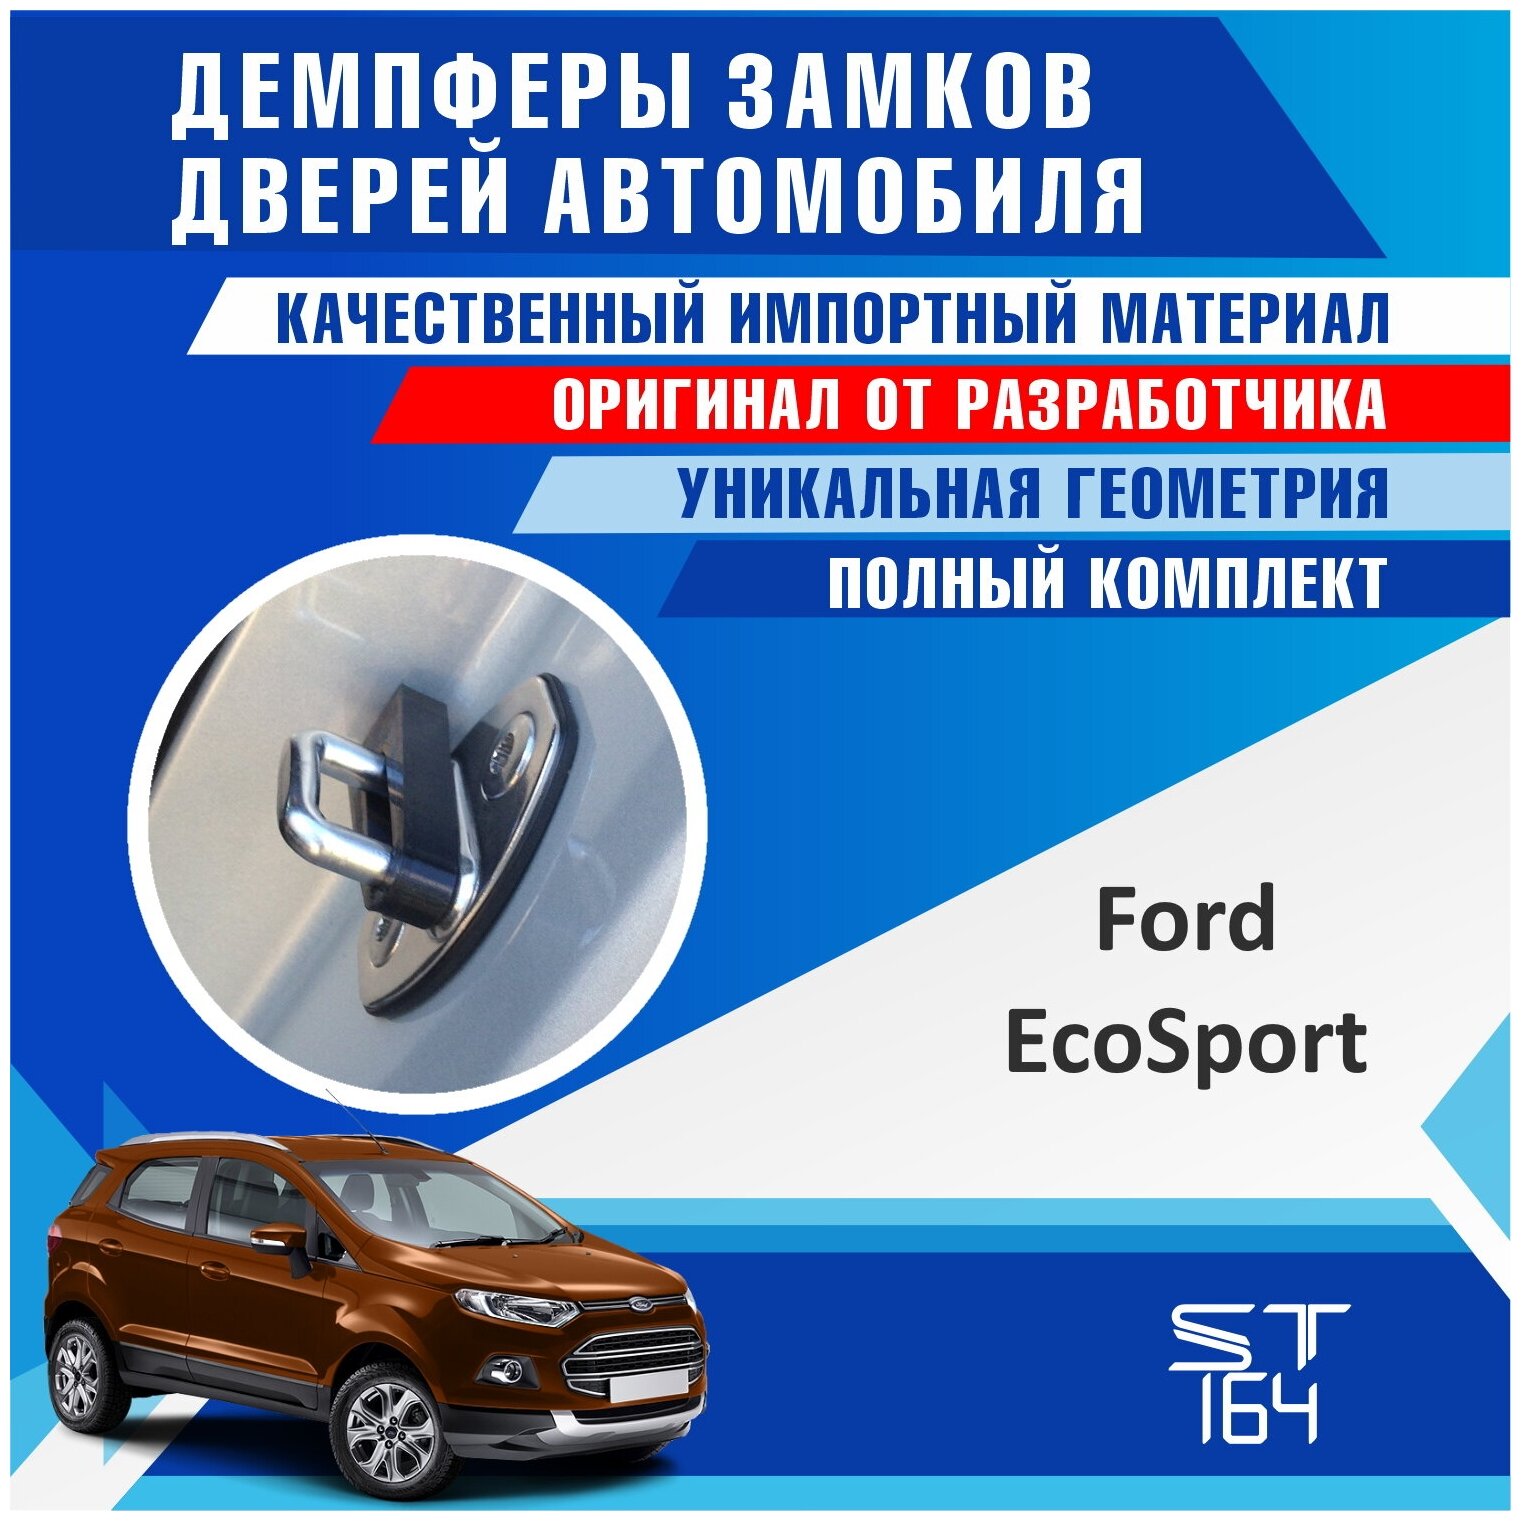 Демпферы замков дверей Форд ЭкоСпорт (Ford EcoSport) на 4 двери + смазка